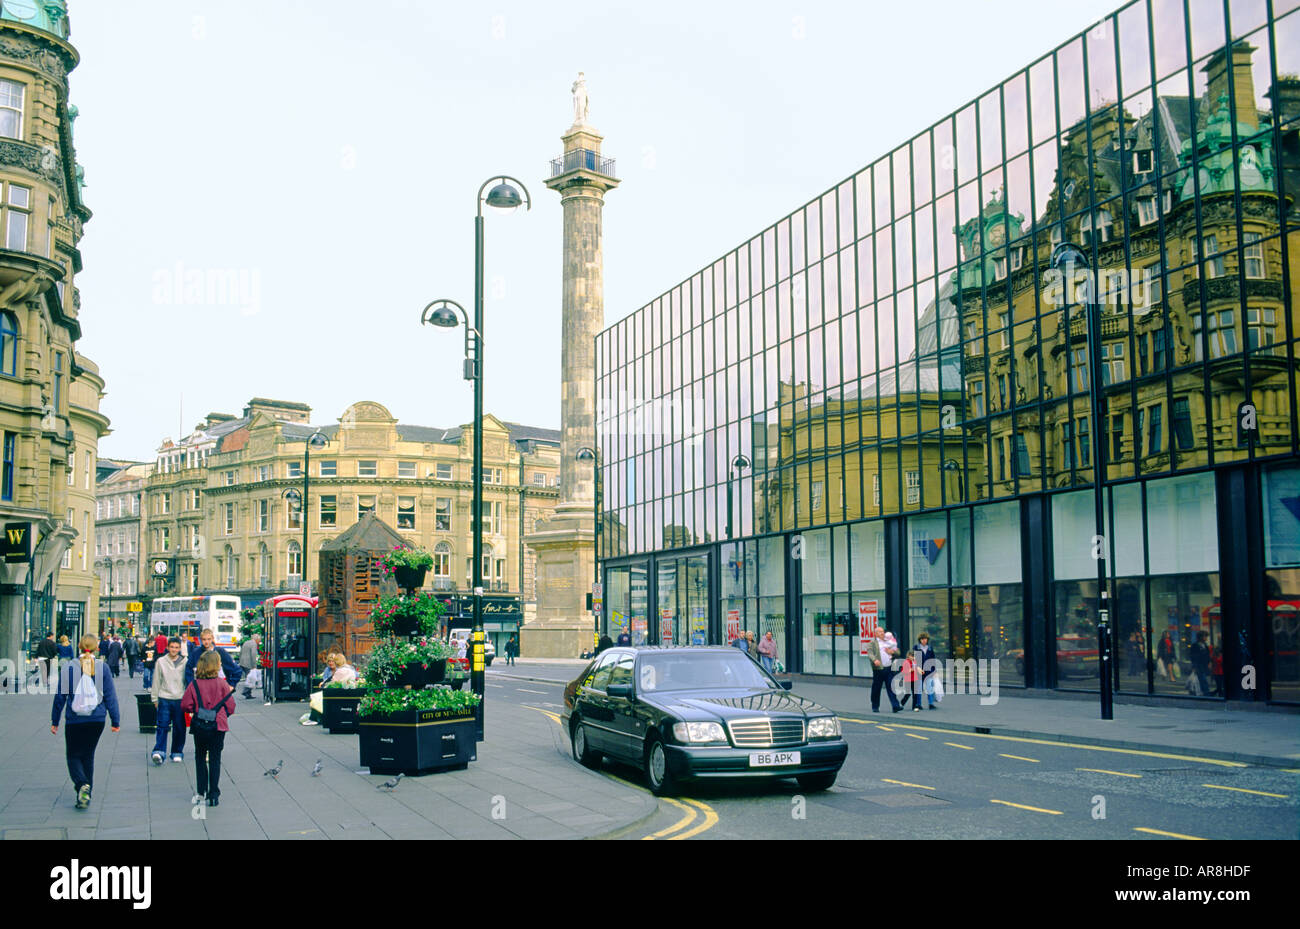 Le centre-ville de Newcastle Upon Tyne, Angleterre, Tyneside. Blackett St. montrant le centre commercial Eldon Square et Monument gris. Banque D'Images